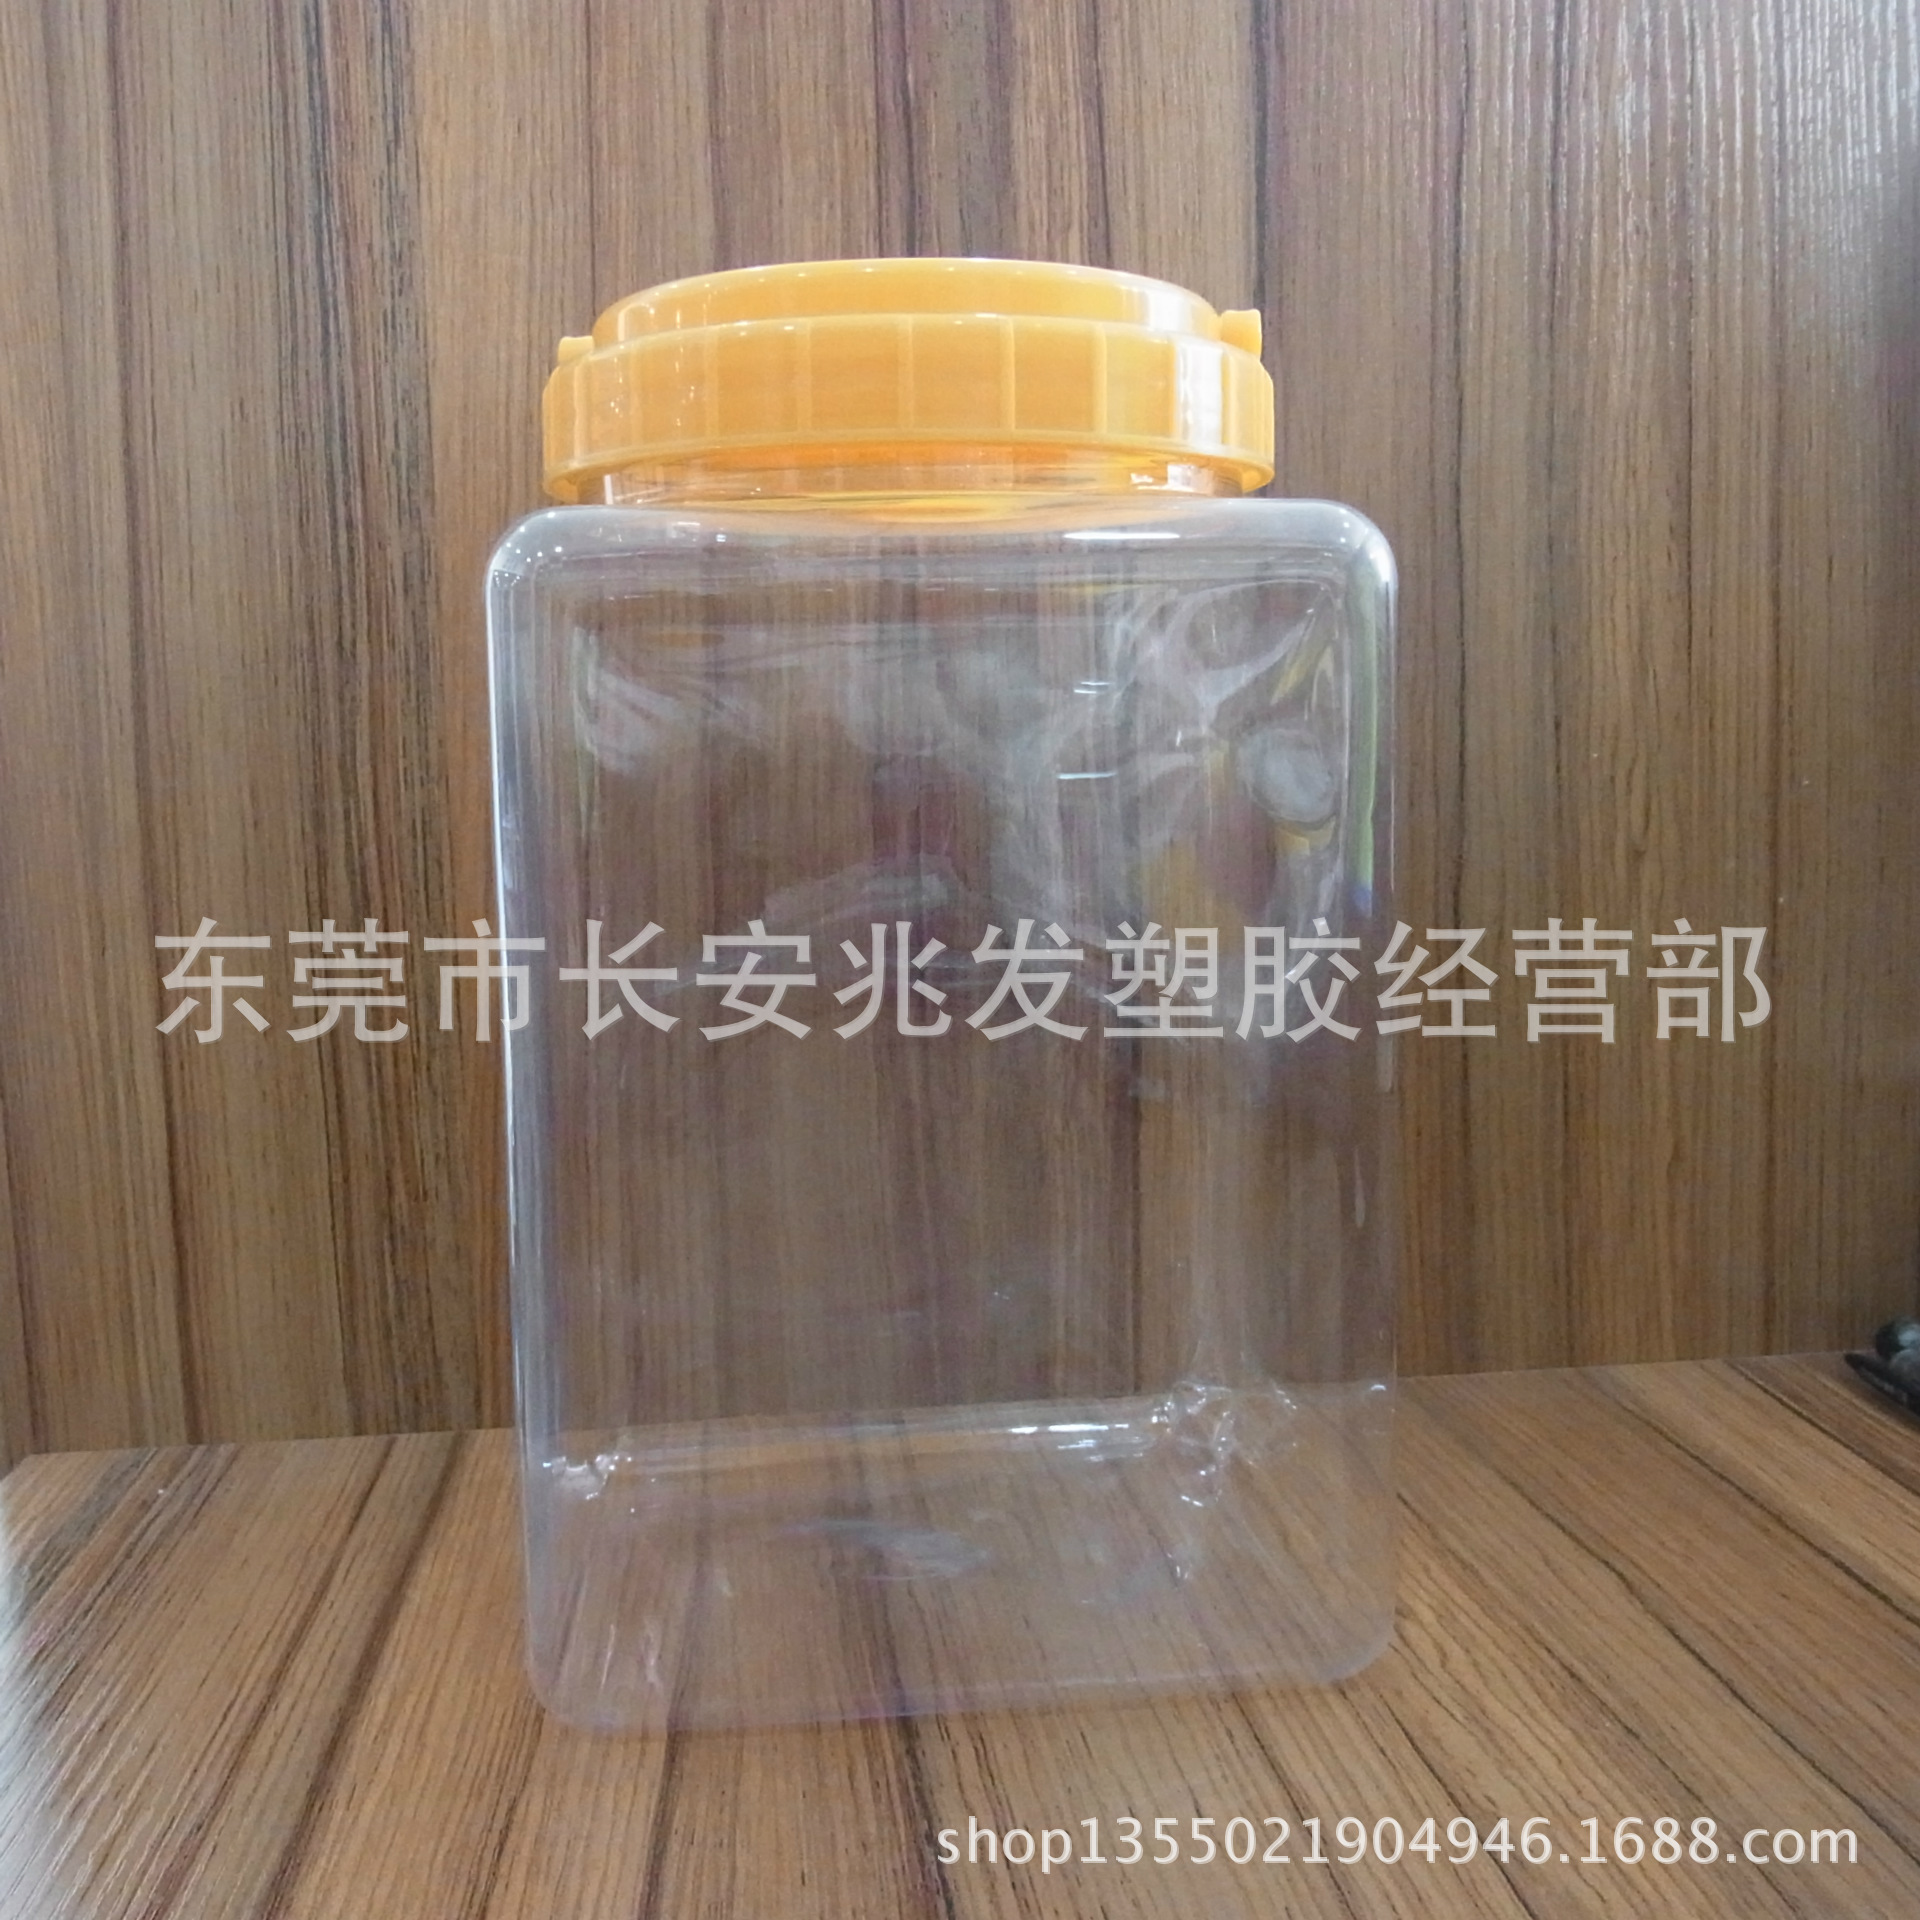 塑料瓶透明瓶 - 塑料瓶透明瓶厂家 - 塑料瓶